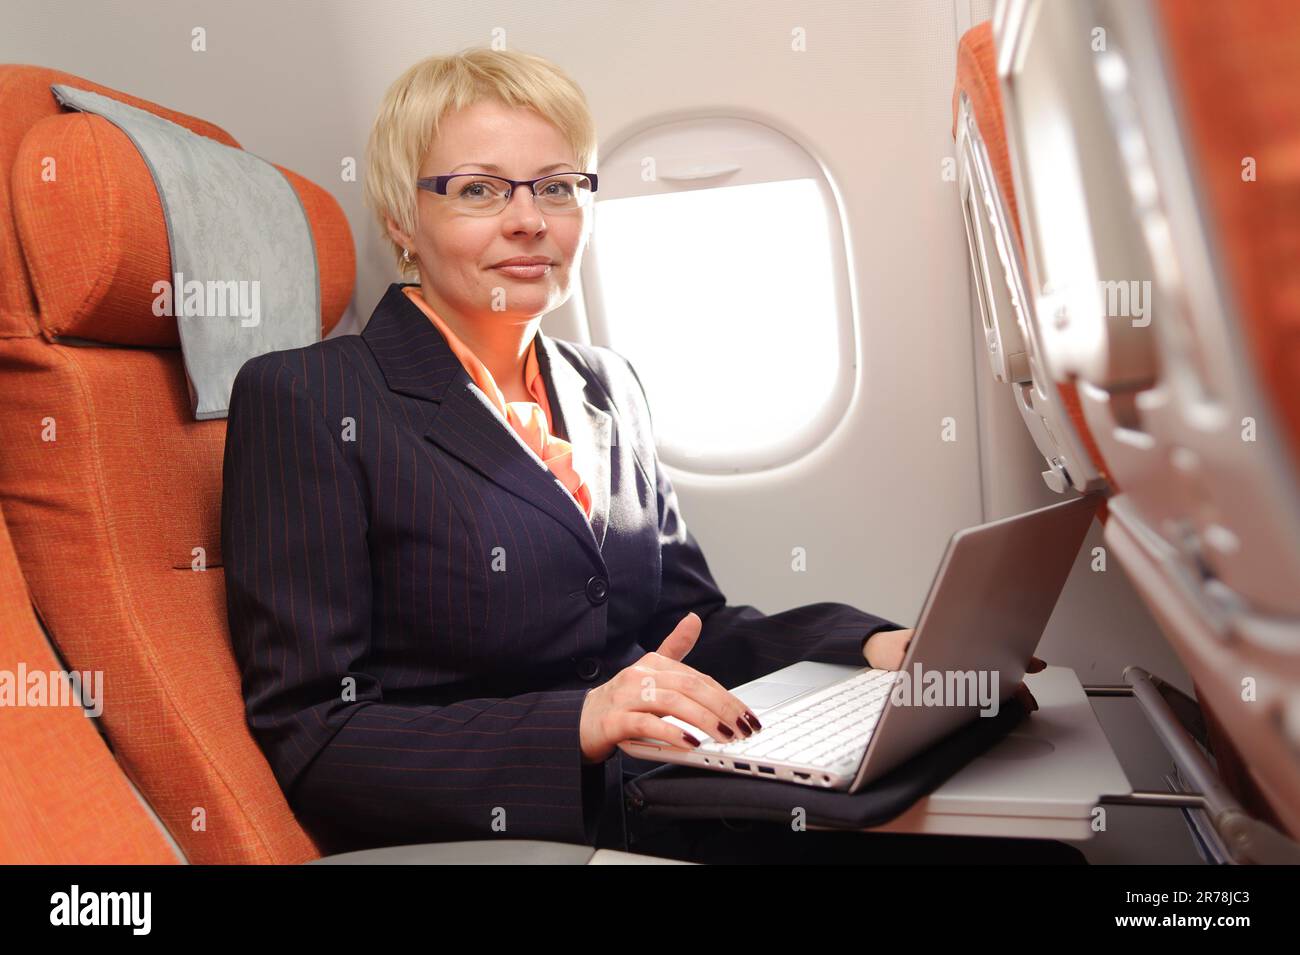 femme d'affaires posant avec un ordinateur portable à bord de l'avion dans la classe d'ecomy d'aeroflot Banque D'Images